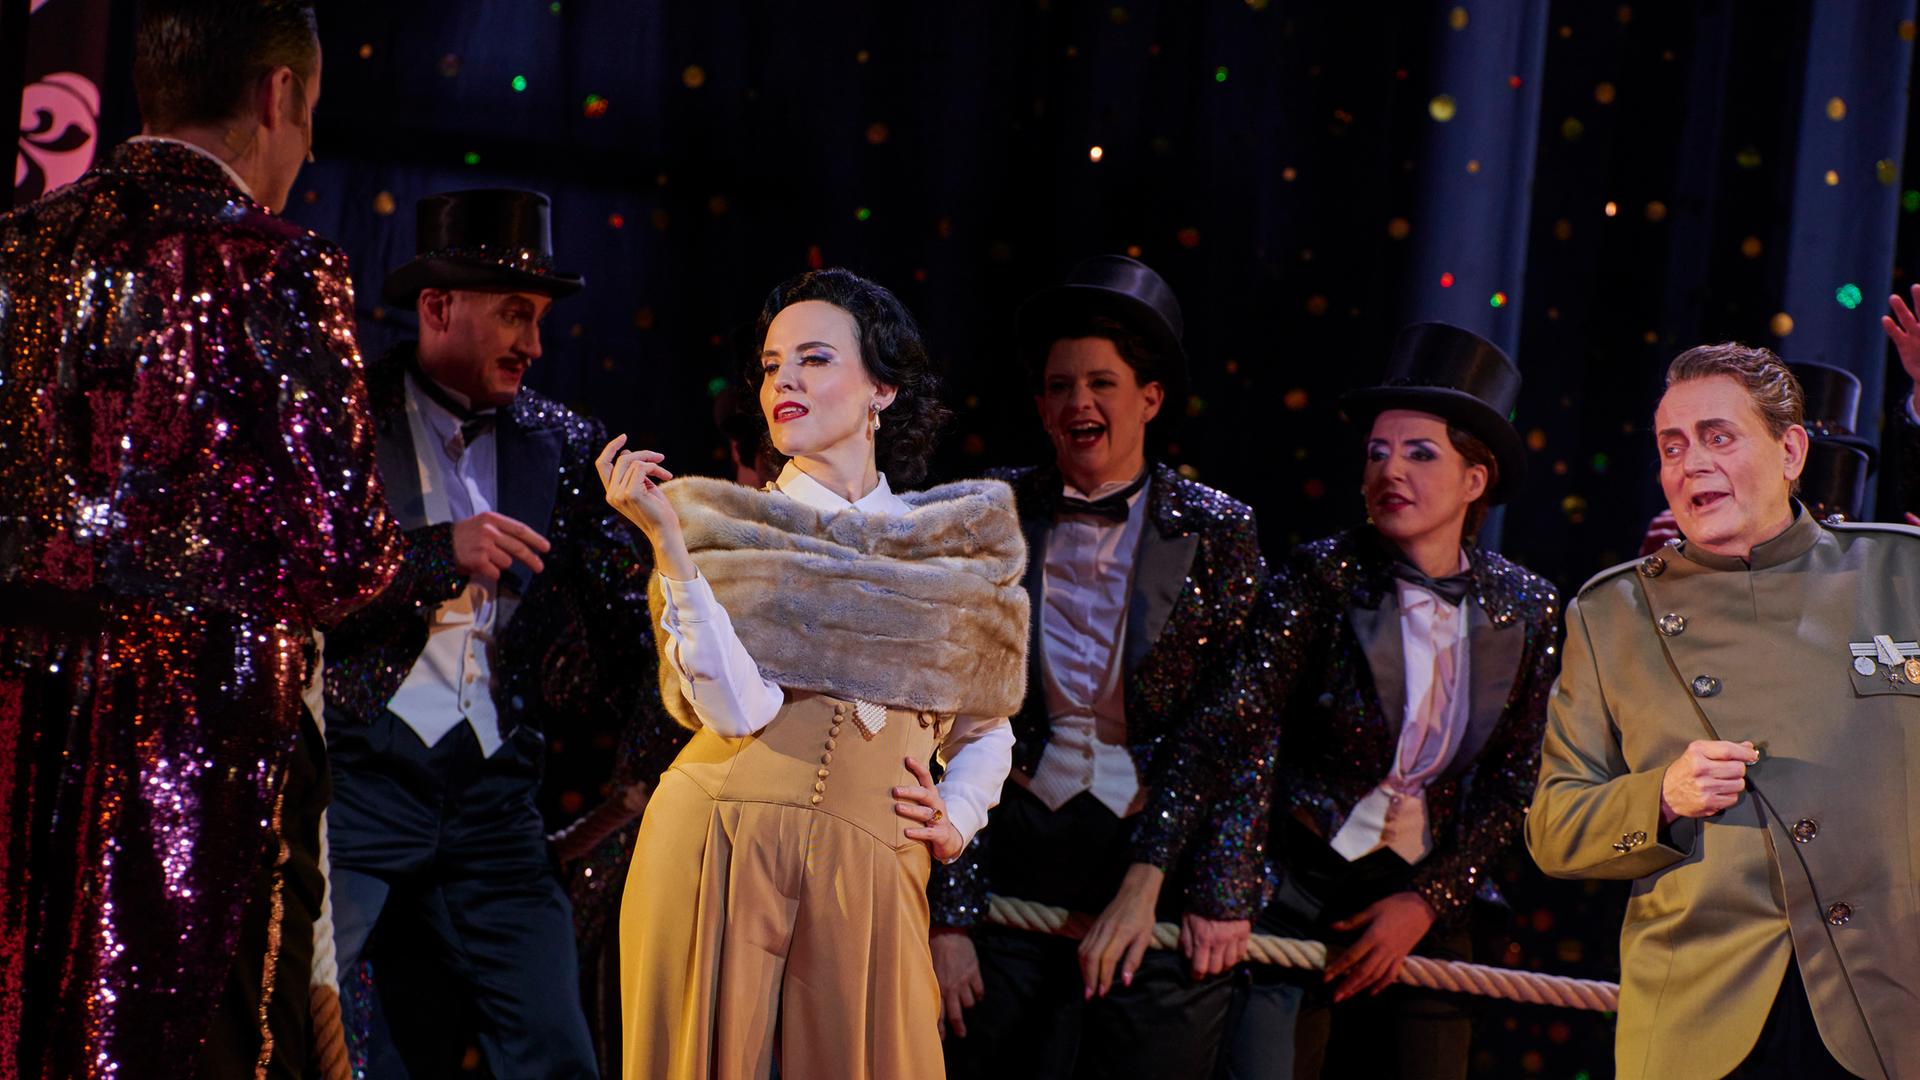 Szenenbild der Jazz-Operette "Die lustige Witwe": Die Schauspielerin Rebecca Nelsen posiert in ihrer Rolle als Hanna Glawari in luxuriös anmutender Kleidung vor dem Ensemble. 